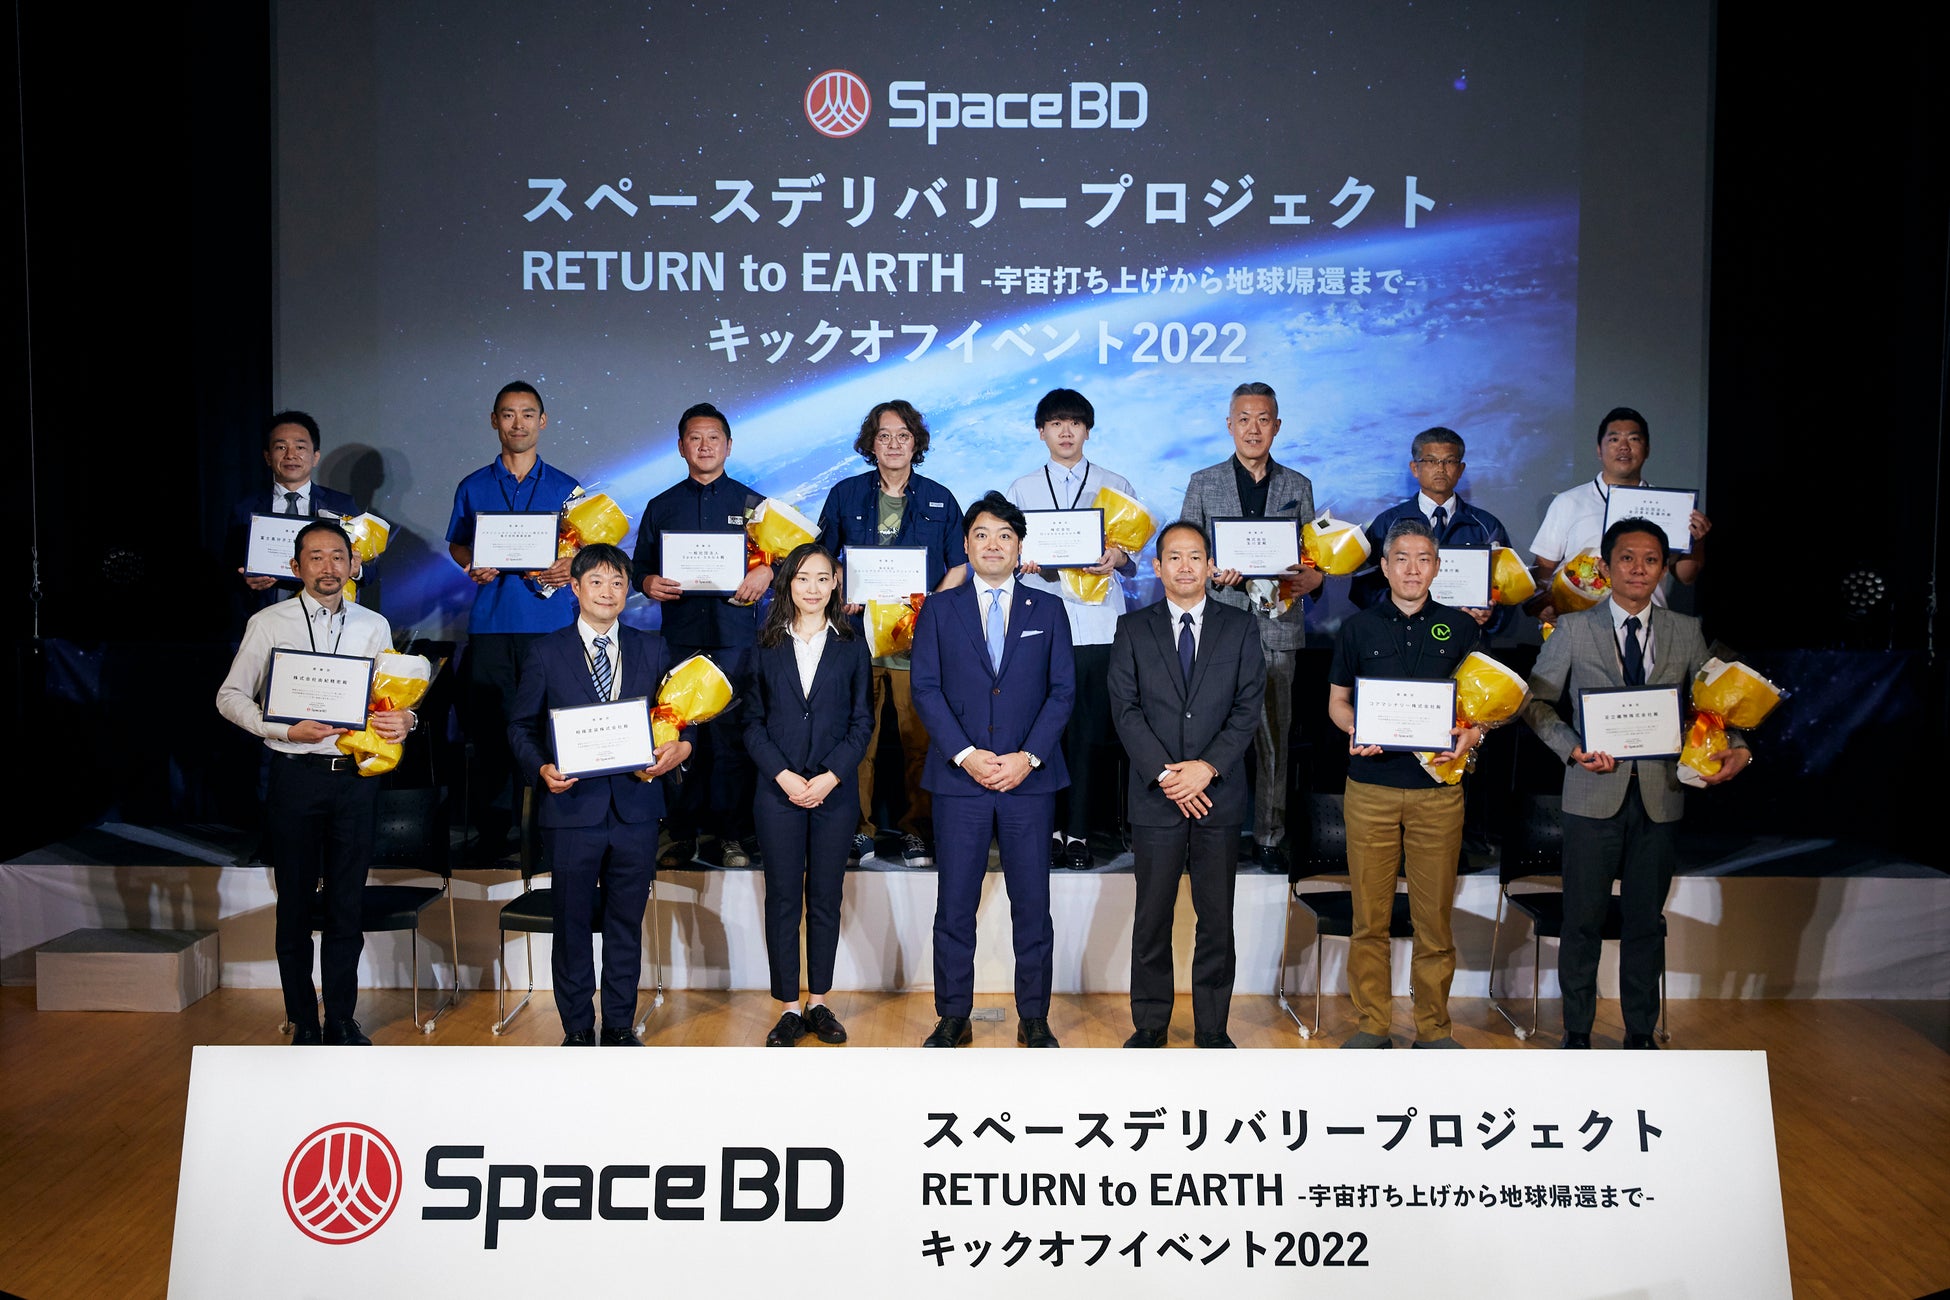 【コロンビア】宇宙商社®Space BDが推進する宇宙利活用プロジェクト「スペースデリバリープロジェクト-RETURN to EARTH-」第二弾に参加のサブ画像1